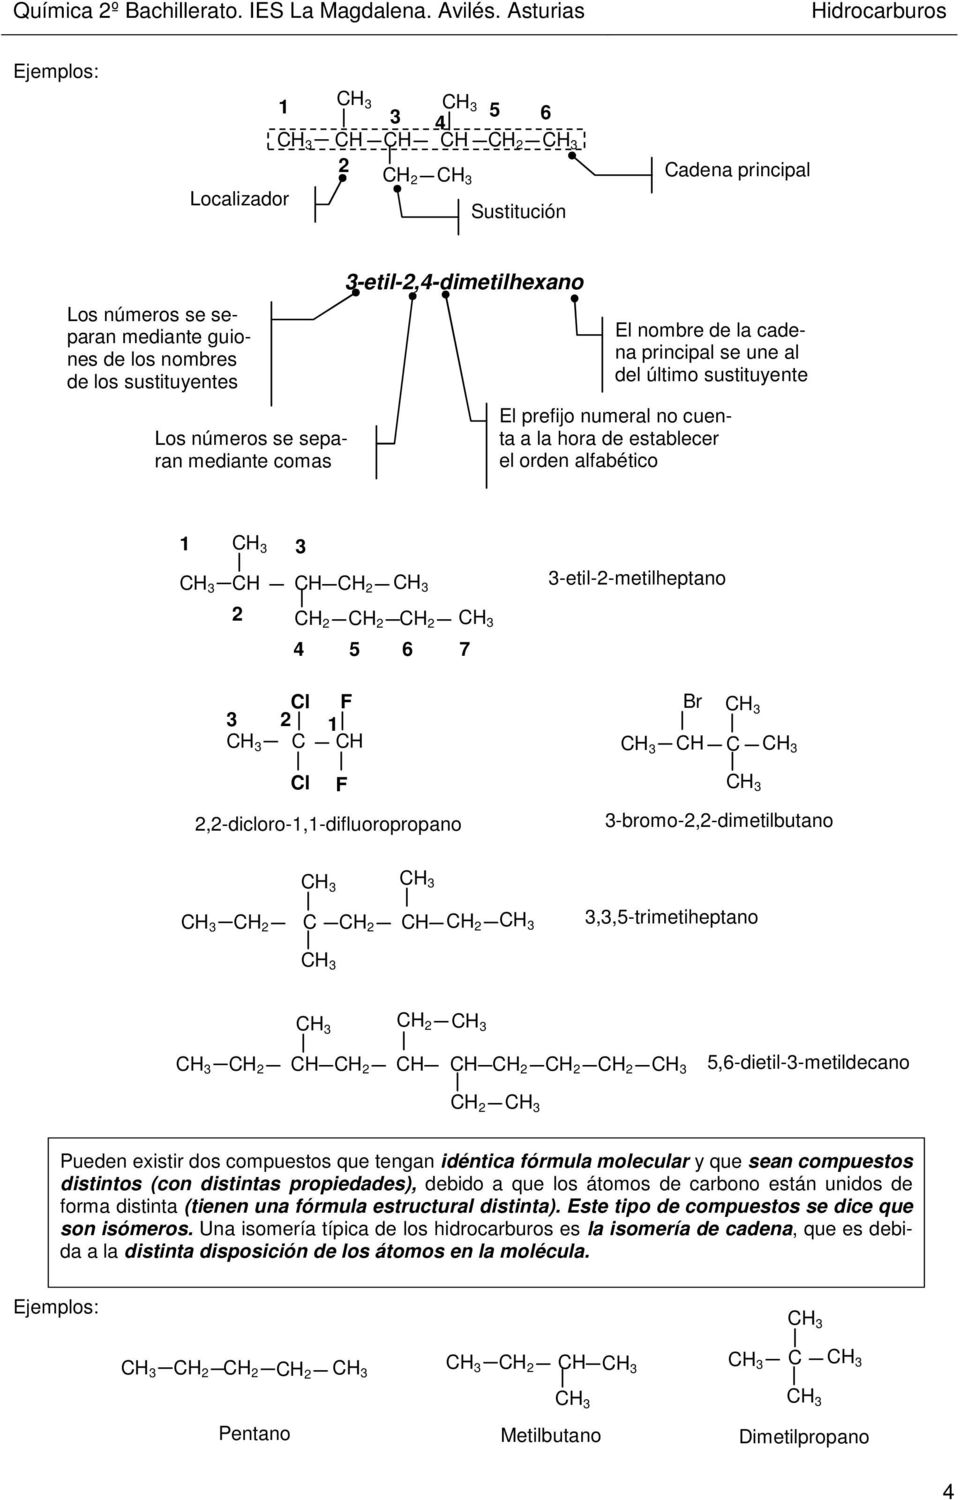 2,2-dicloro-1,1-difluoropropano F 3-bromo-2,2-dimetilbutano 2 2 2 3,3,5-trimetiheptano 2 2 2 2 2 2 5,6-dietil-3-metildecano 2 Pueden existir dos compuestos que tengan idéntica fórmula molecular y que